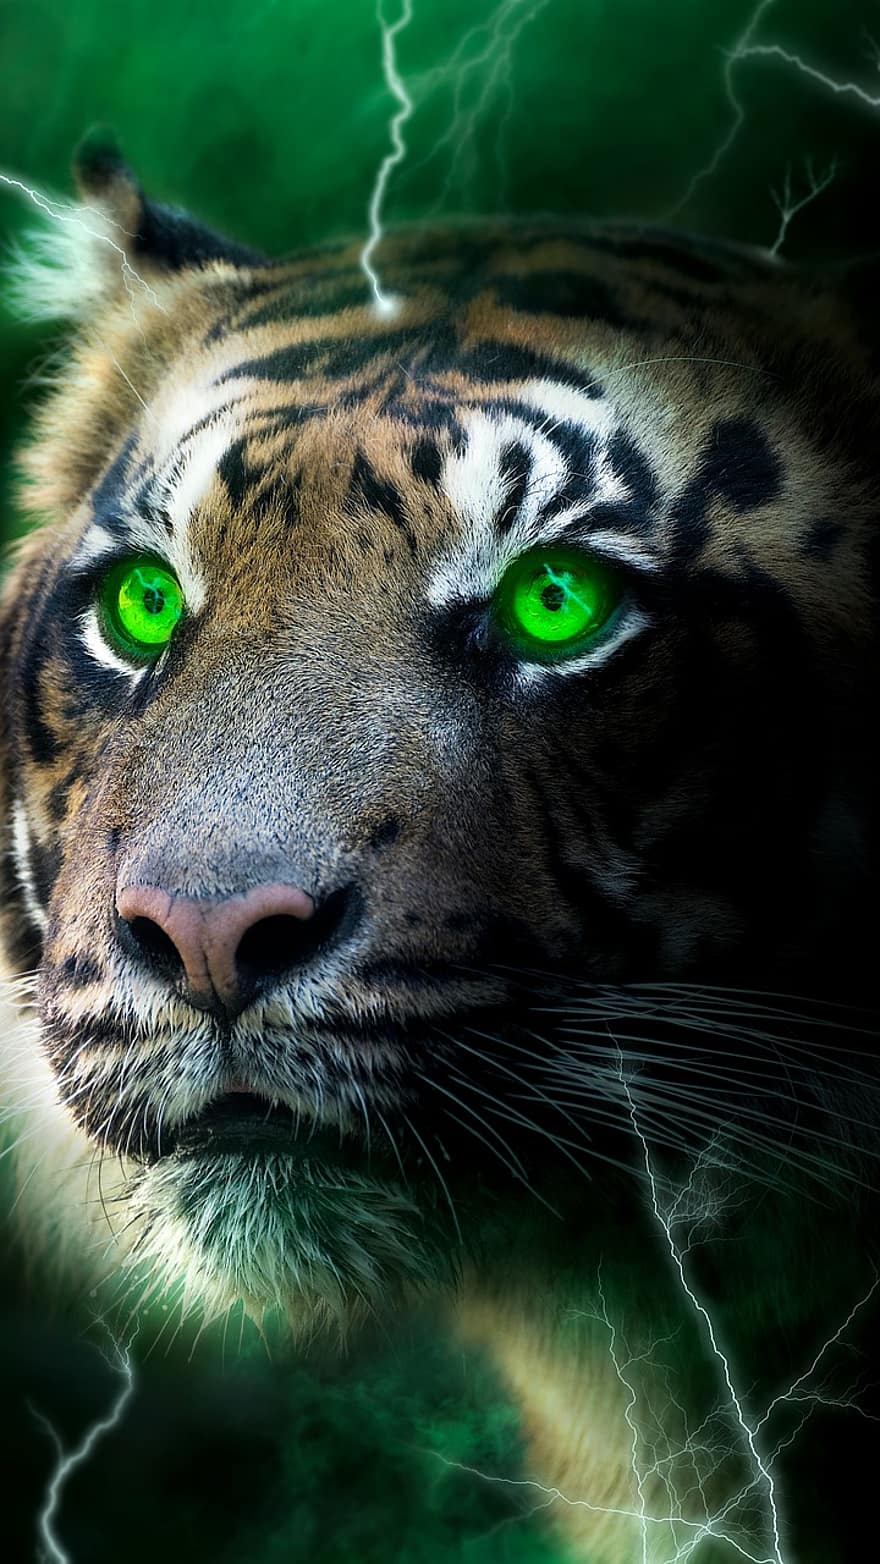 tijger, bliksem, donker, gloed, groen, mist, behang, katachtig, dieren in het wild, dierenkop, ongetemde kat